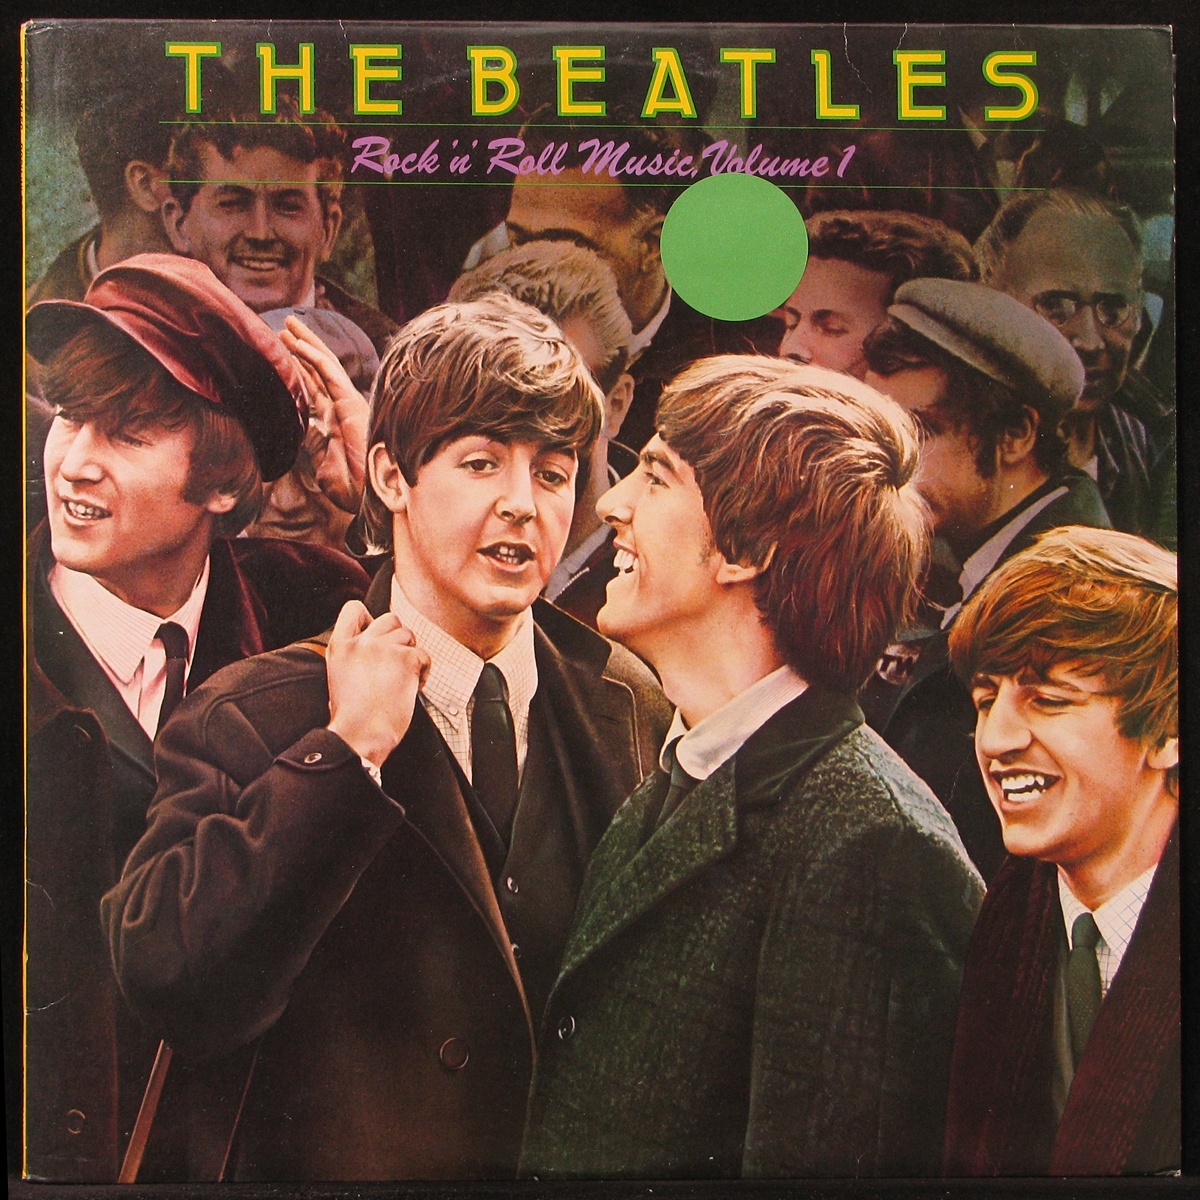 LP Beatles — Rock 'N' Roll Music Vol.1 фото